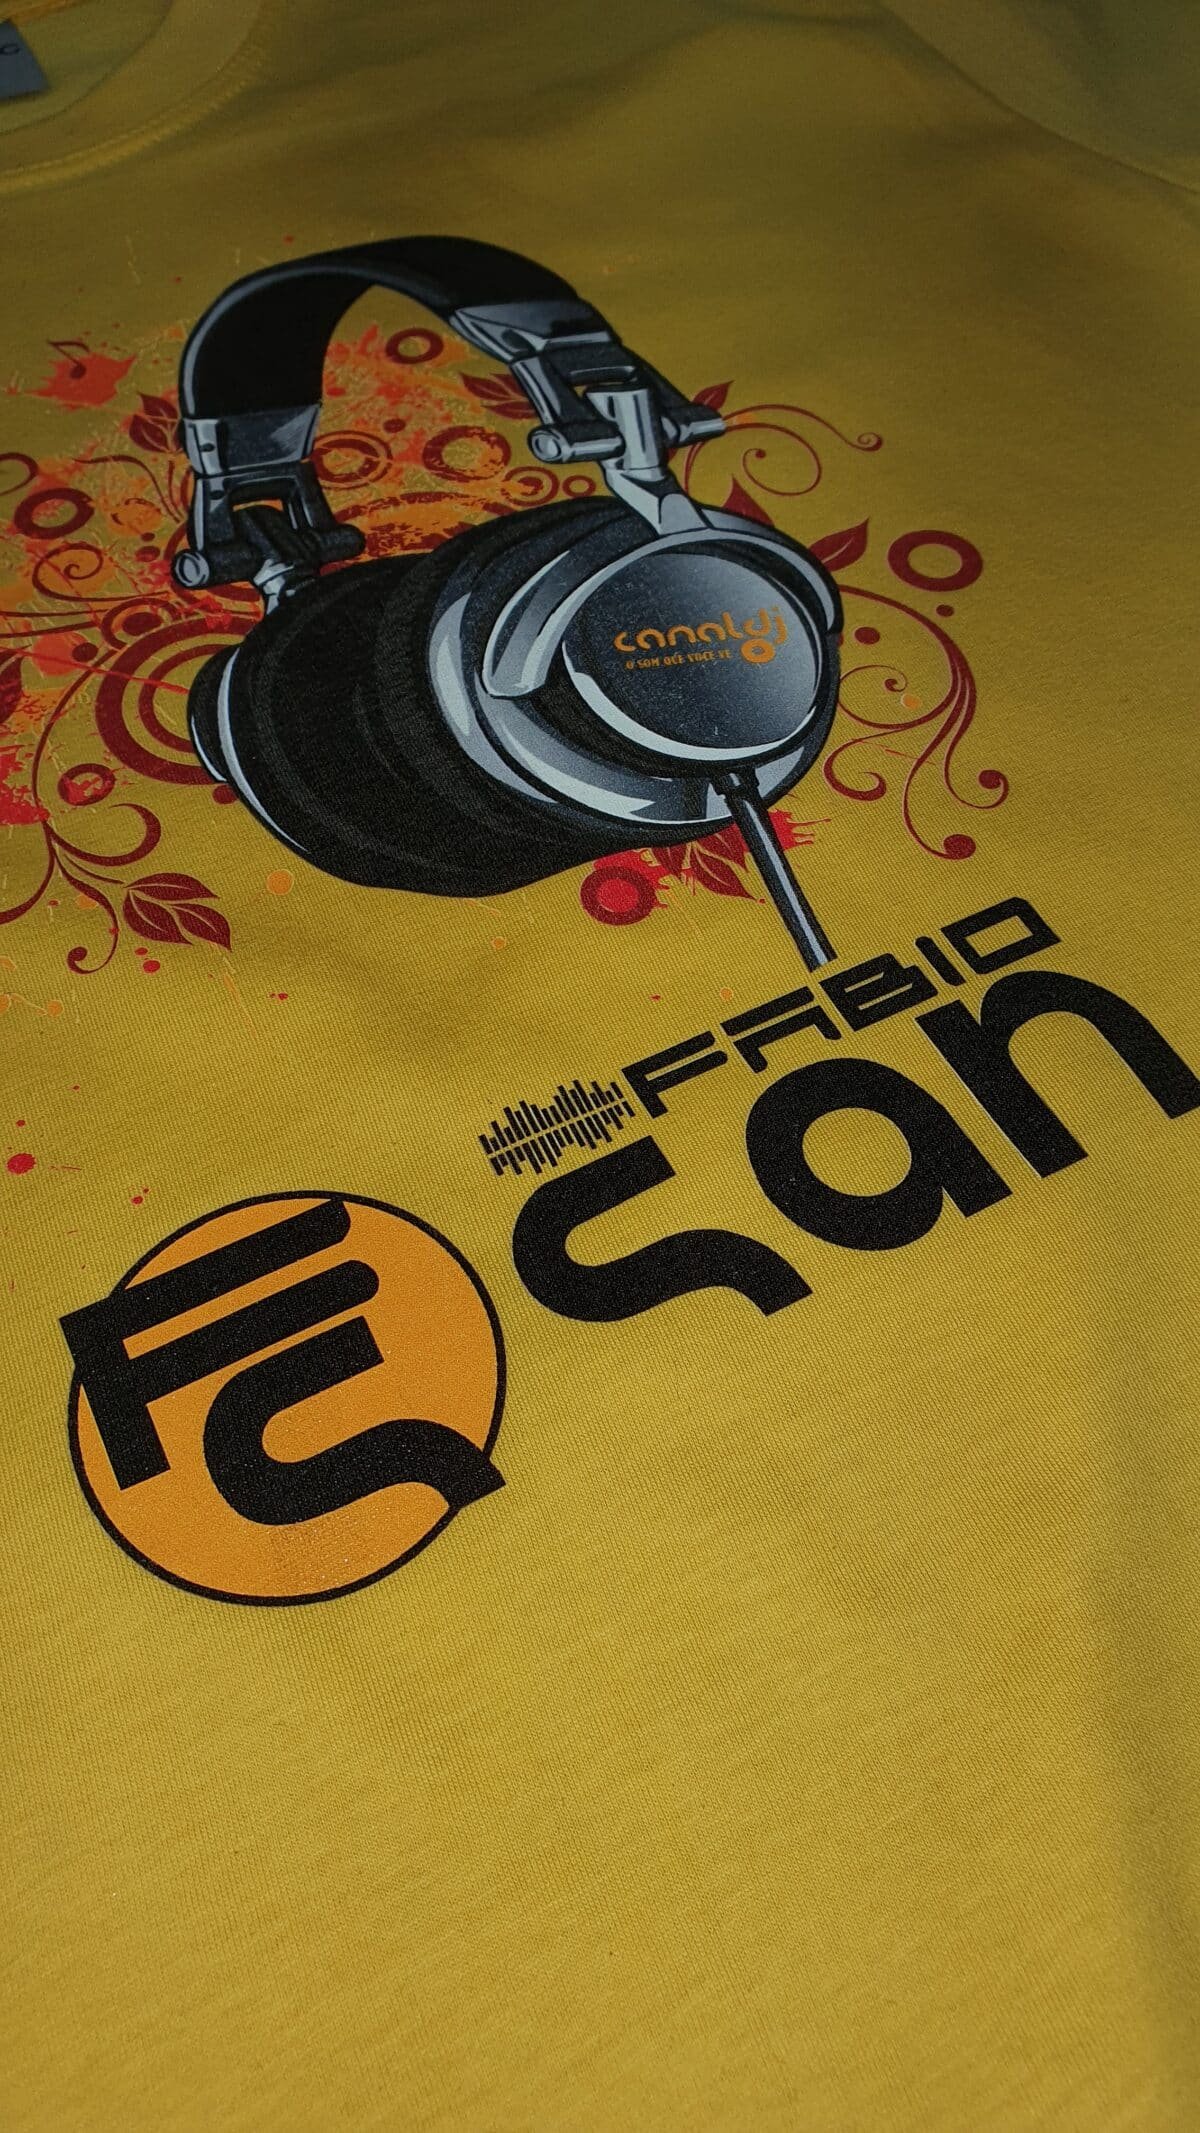 Camiseta DJ Fabio San - Aniversário - by Bordado & Cia - @bordado.cia @djfabiosan